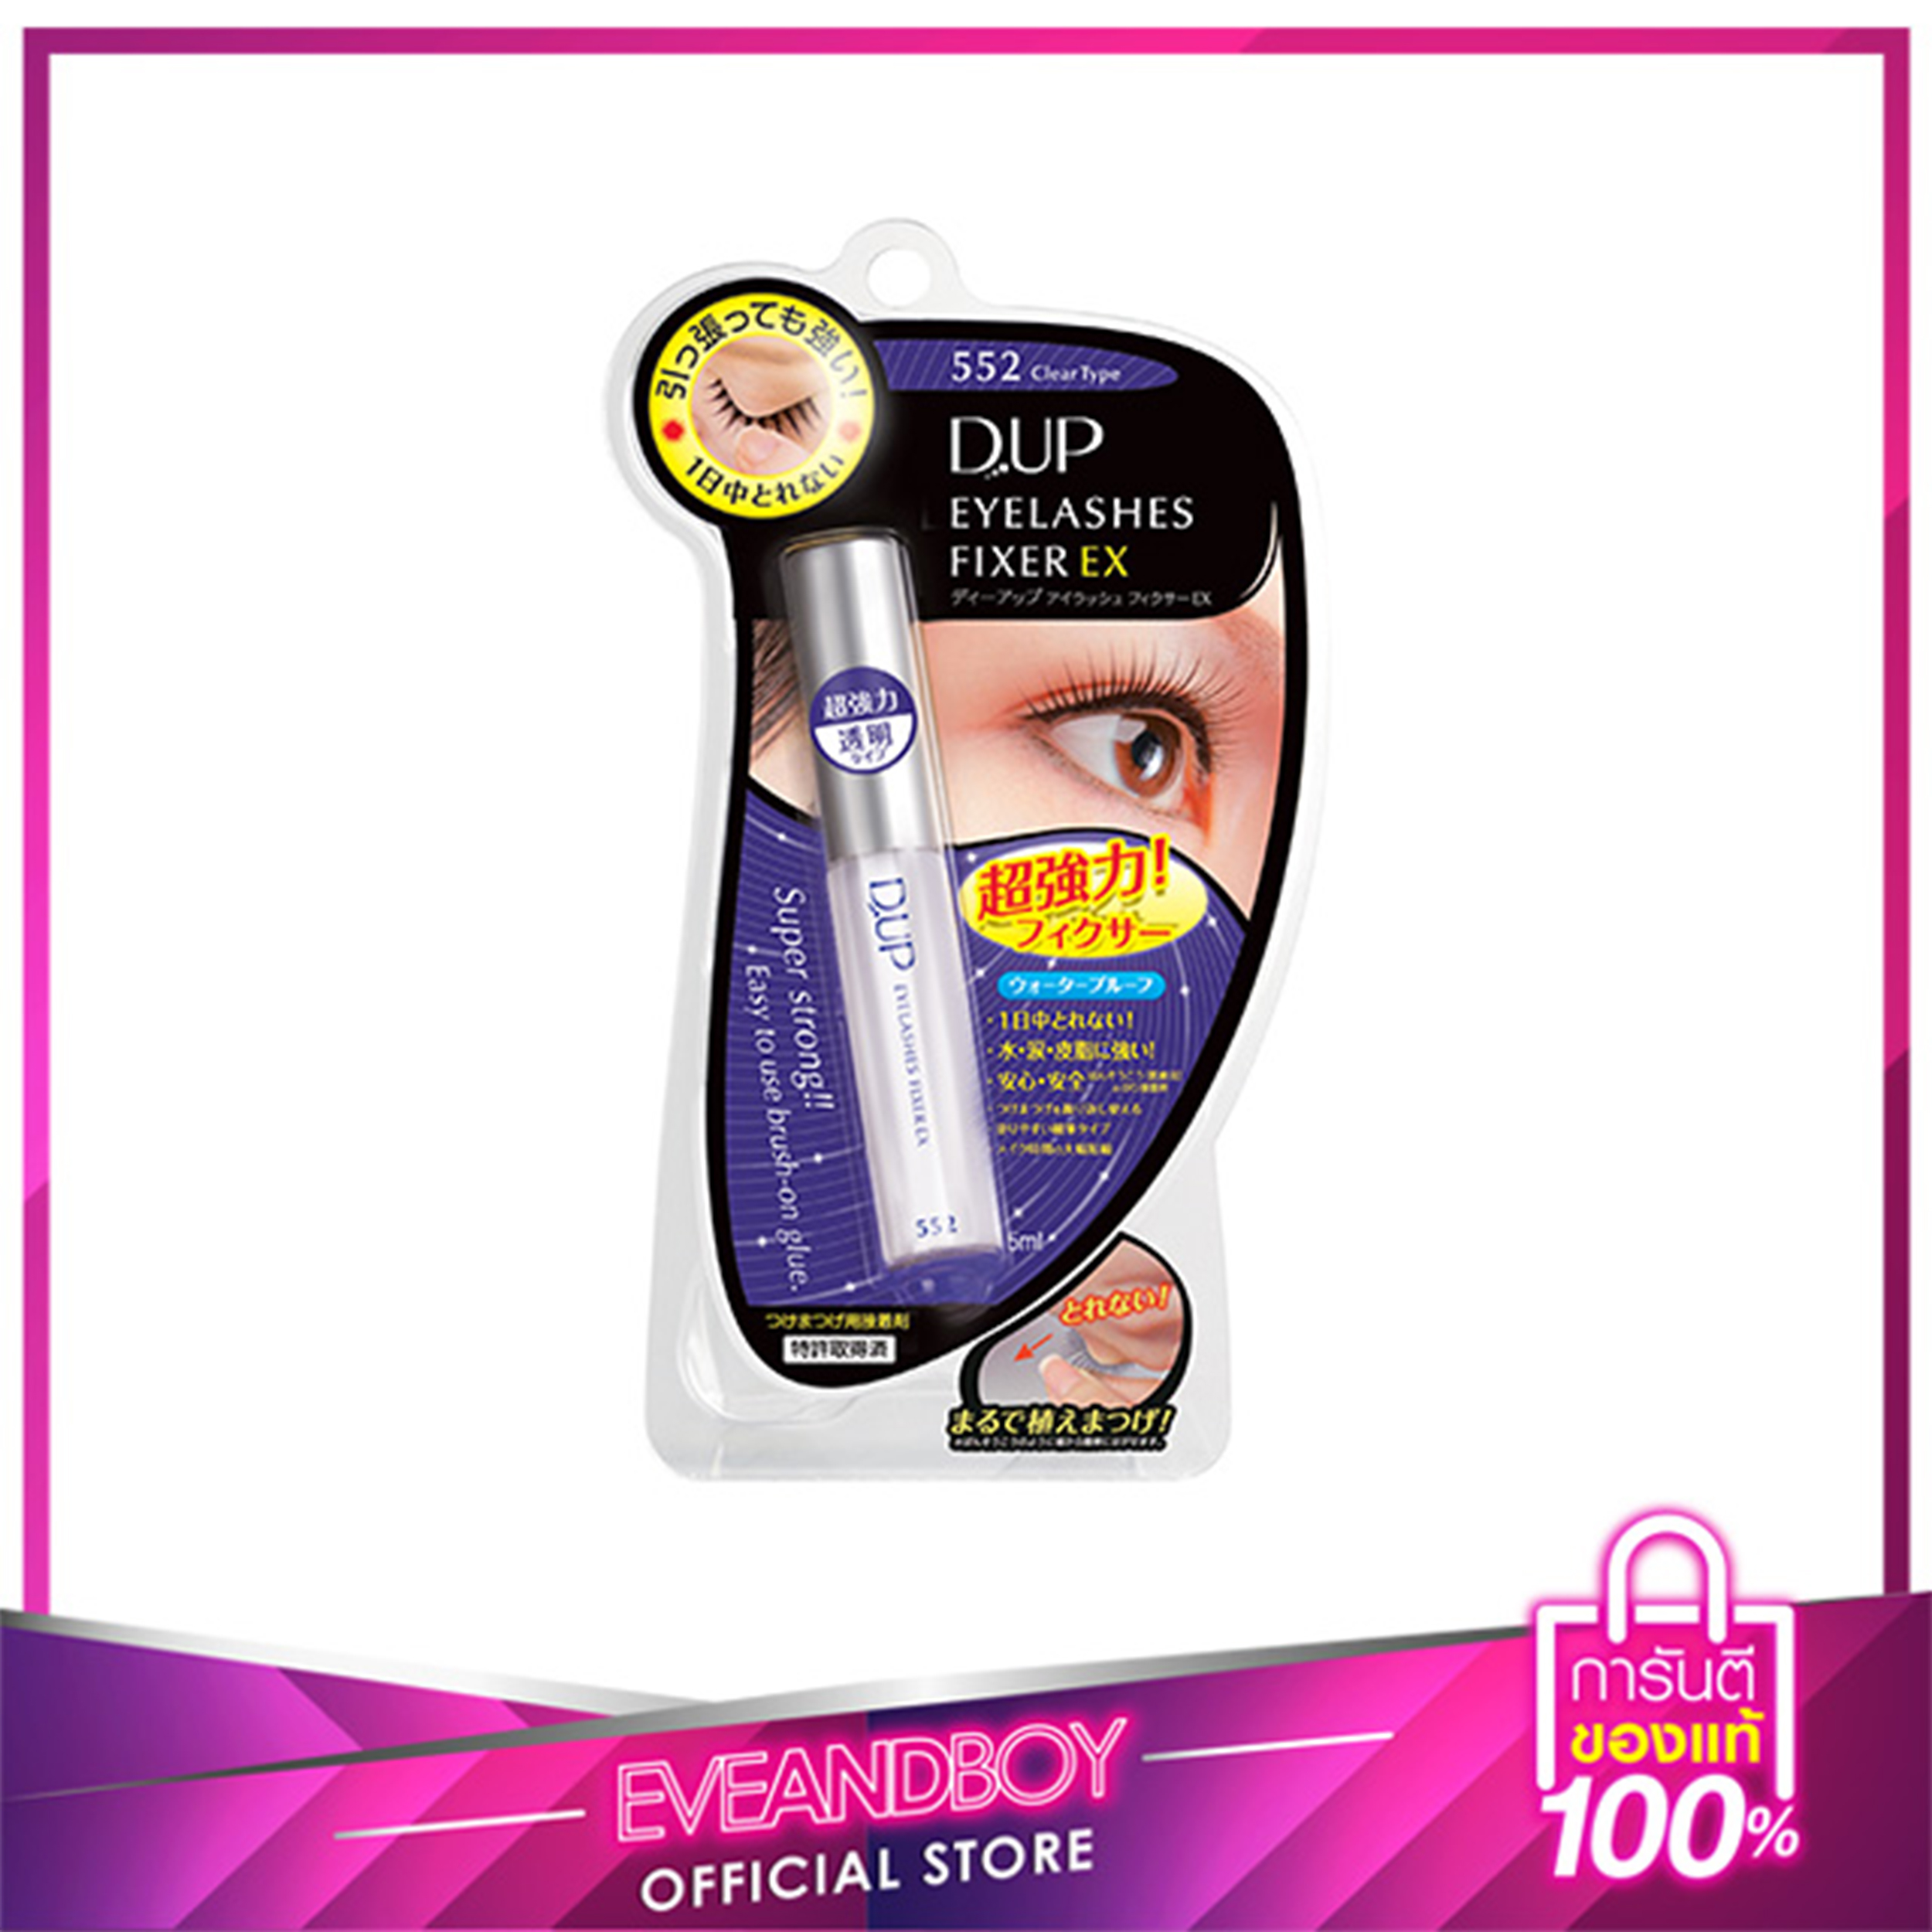 D-UP - Eyelashes Fixer EX 552 5 ml.